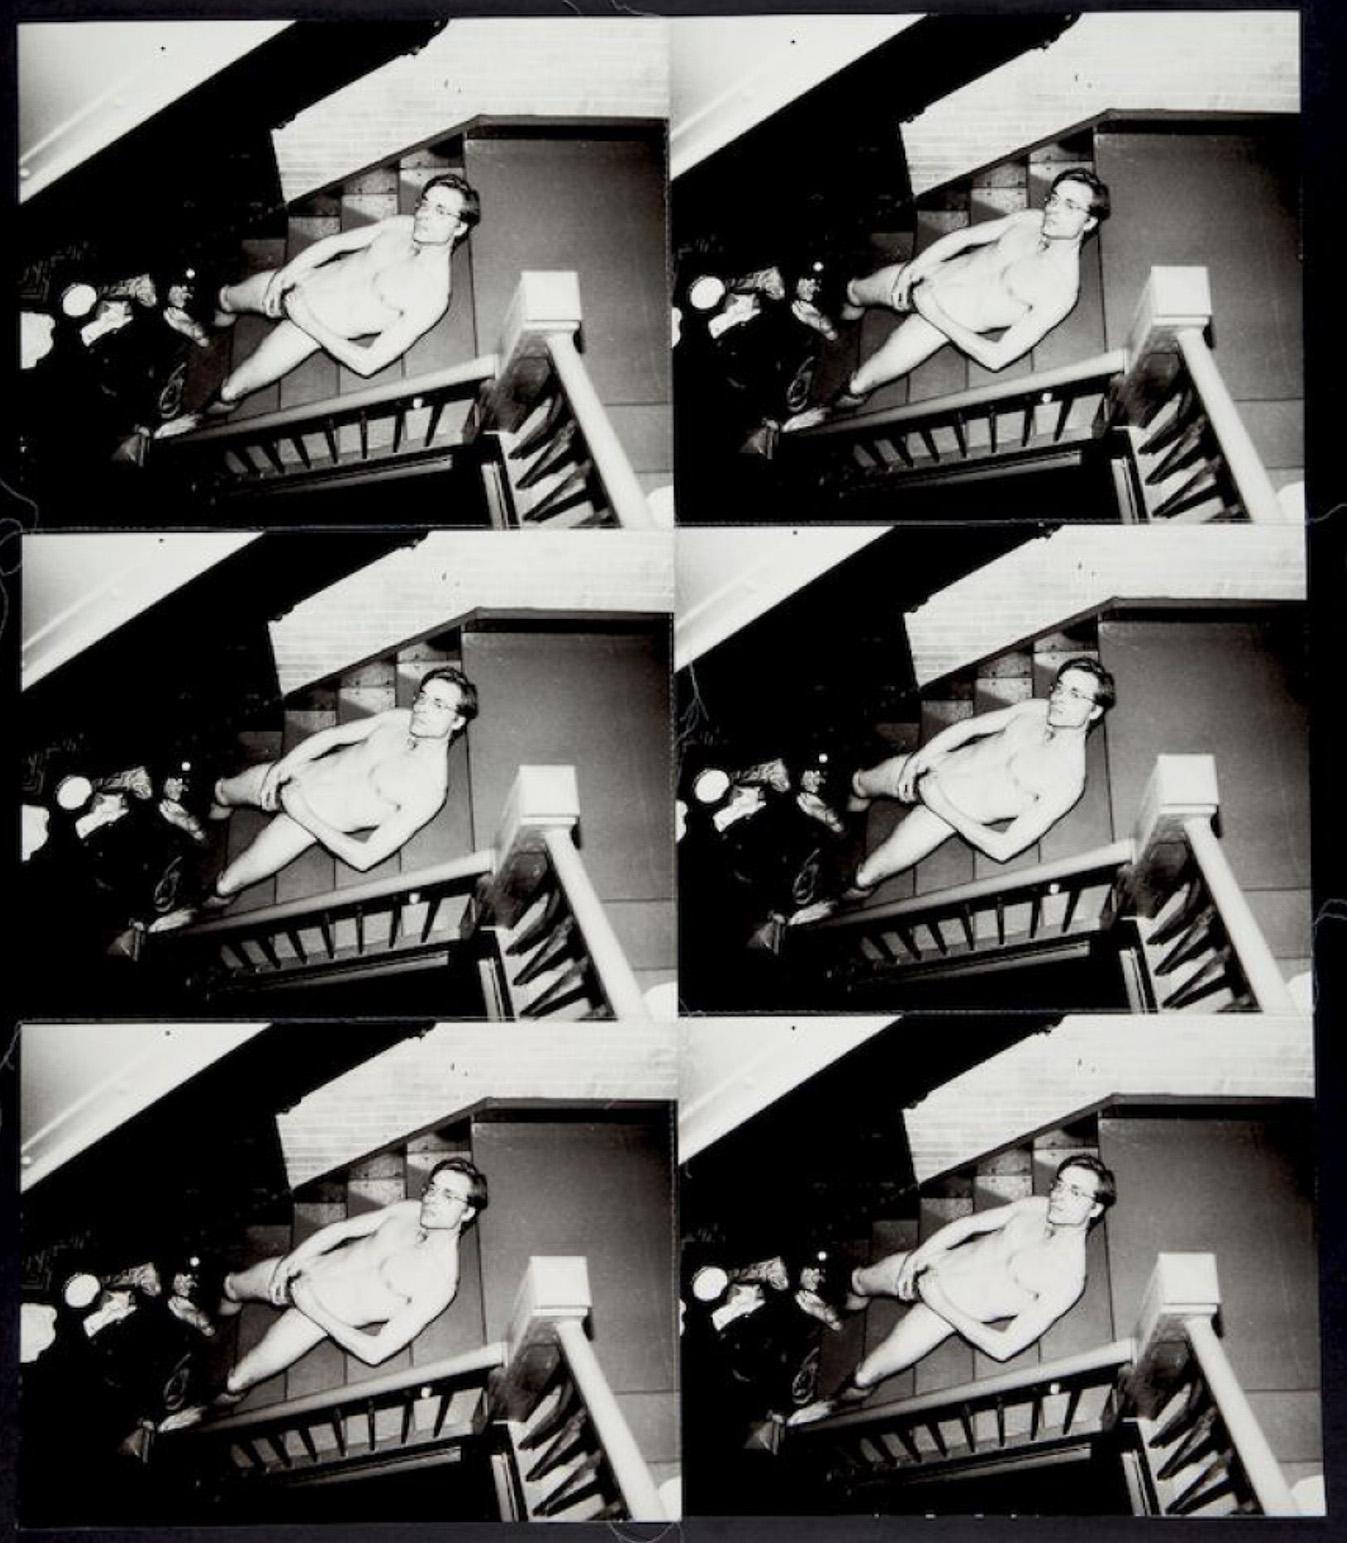 "Zwischen 1982 und 1987 schuf Andy Warhol mehrere hundert Werke, die jeweils aus mehreren identischen, mit Faden zusammengenähten Fotografien bestehen. An den Rändern der Arbeiten bleiben überschüssige Fäden hängen, was zusammen mit dem Knicken und